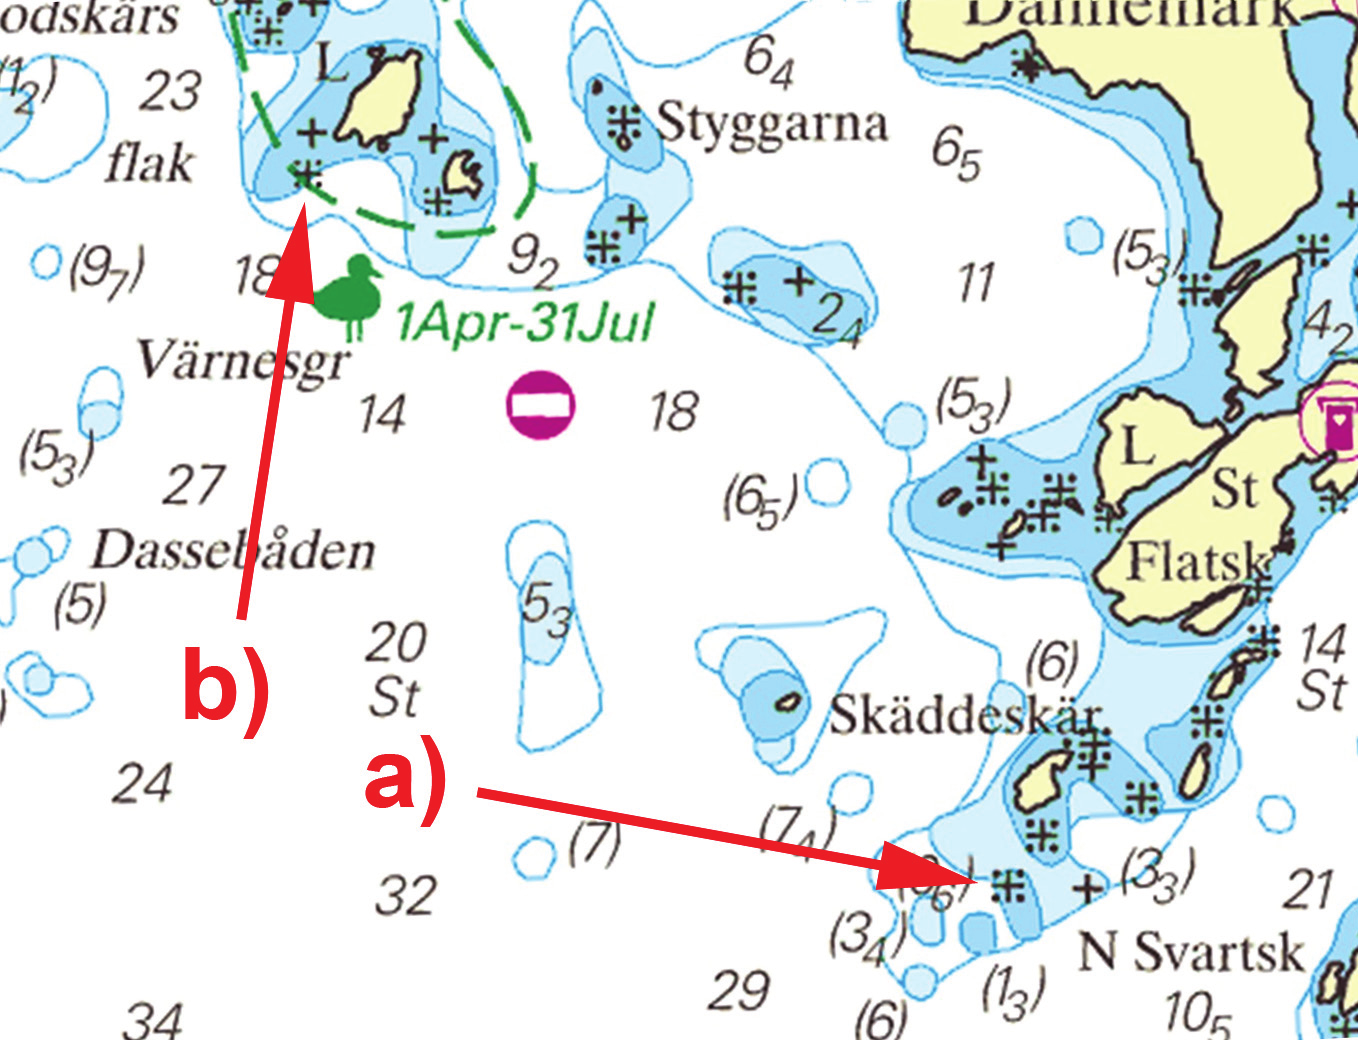 17 Nr 441 * 8429 Sjökort/Chart: 934 Sverige. Skagerrak. Sotefjorden. Skäddeskär. Lilla Rödskär. Ändrad djupinformation.